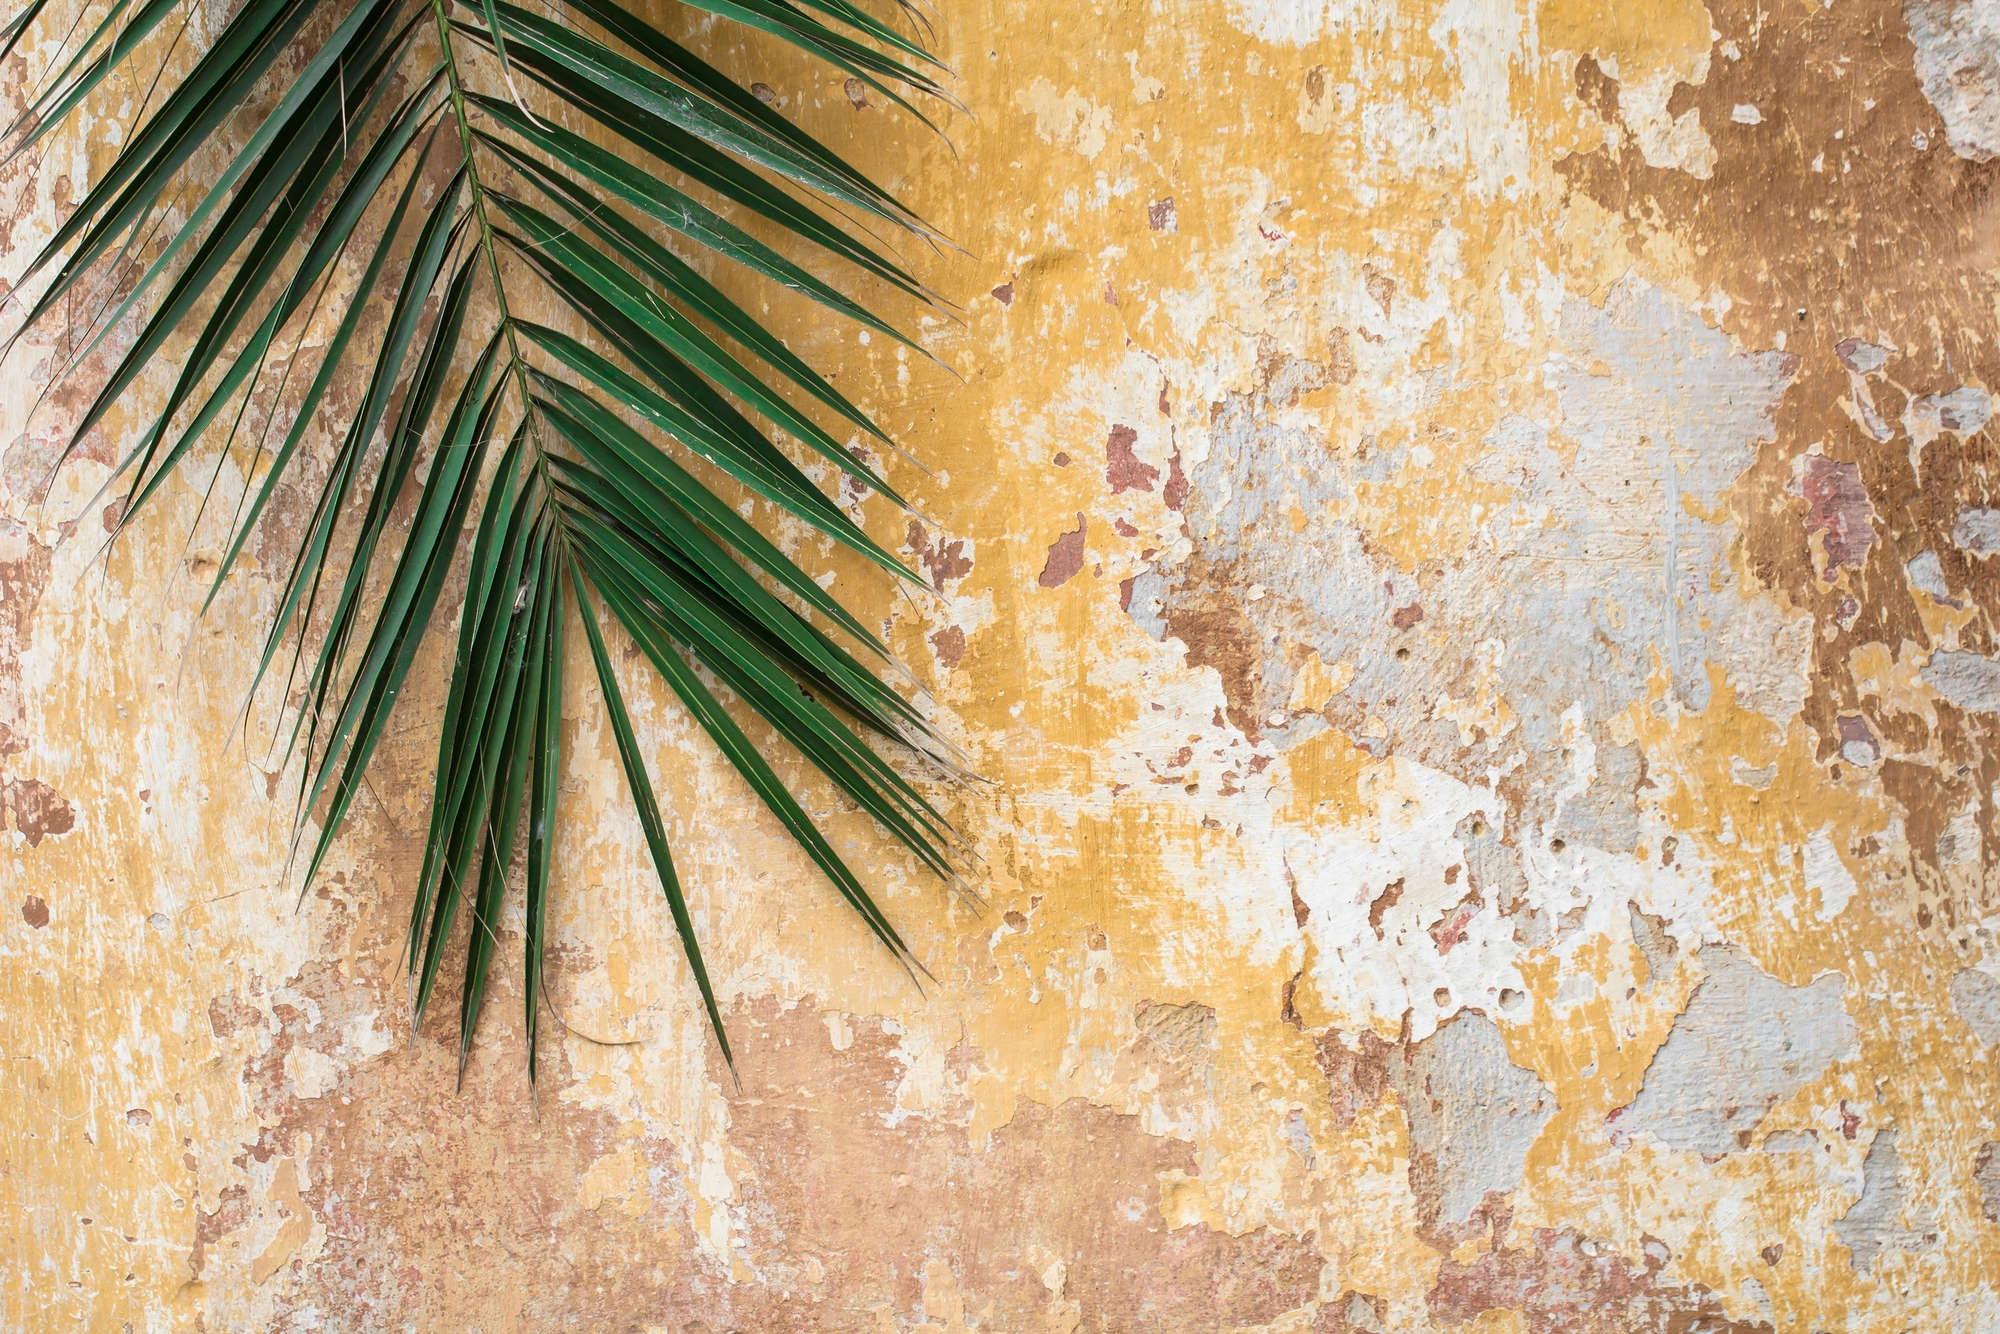             Mural de la naturaleza hoja de palma frente a la pared de piedra en la tela no tejida con textura
        